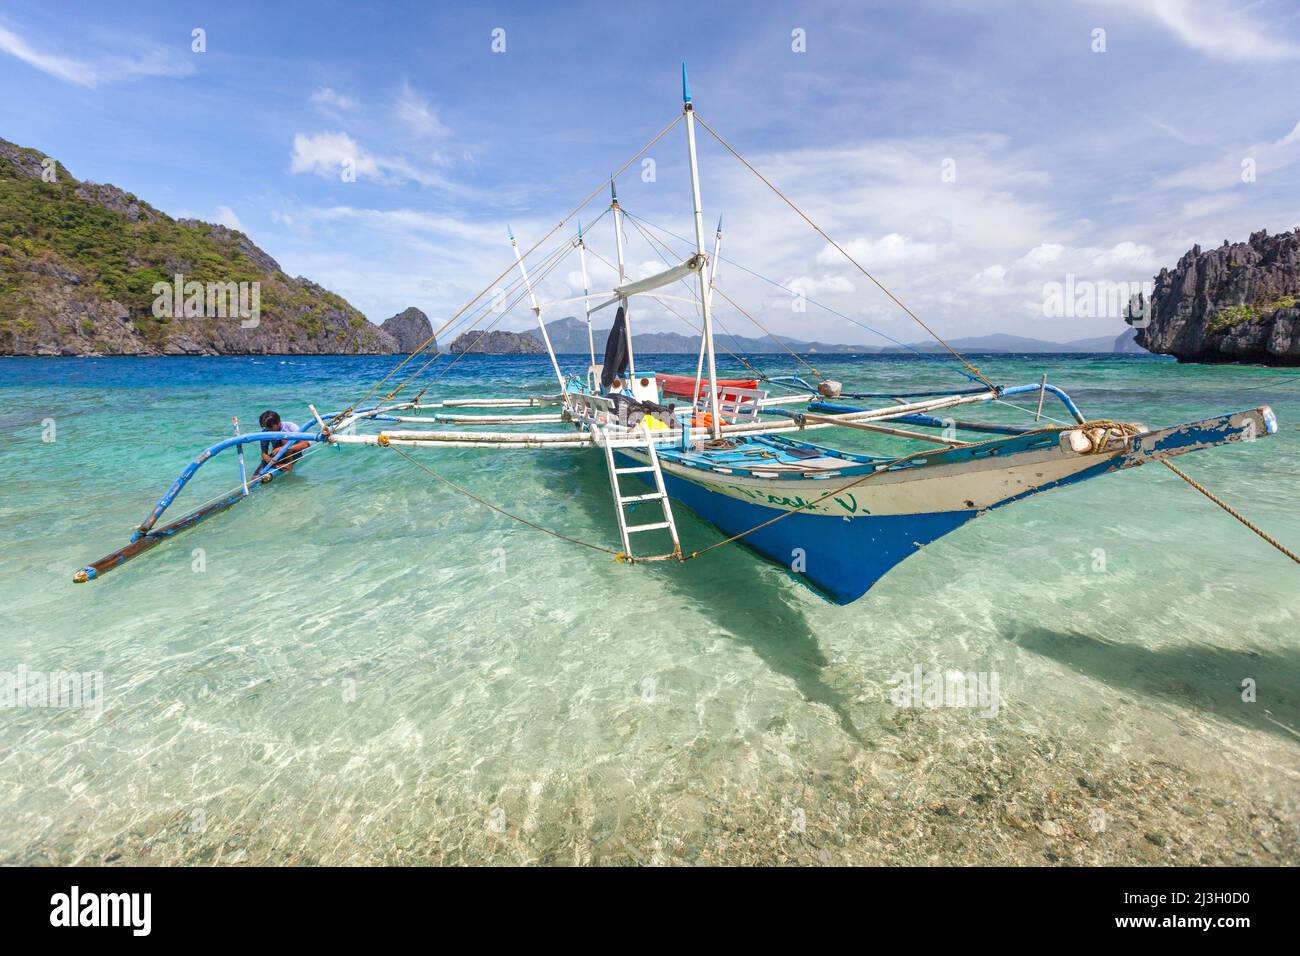 Philippines, Palawan, El Nido, Archipel de Bacuit, île de Miniloc, Plage de Payong-Payong, canoë-kayak sur l'eau turquoise et transparente de la plage de sable blanc Banque D'Images